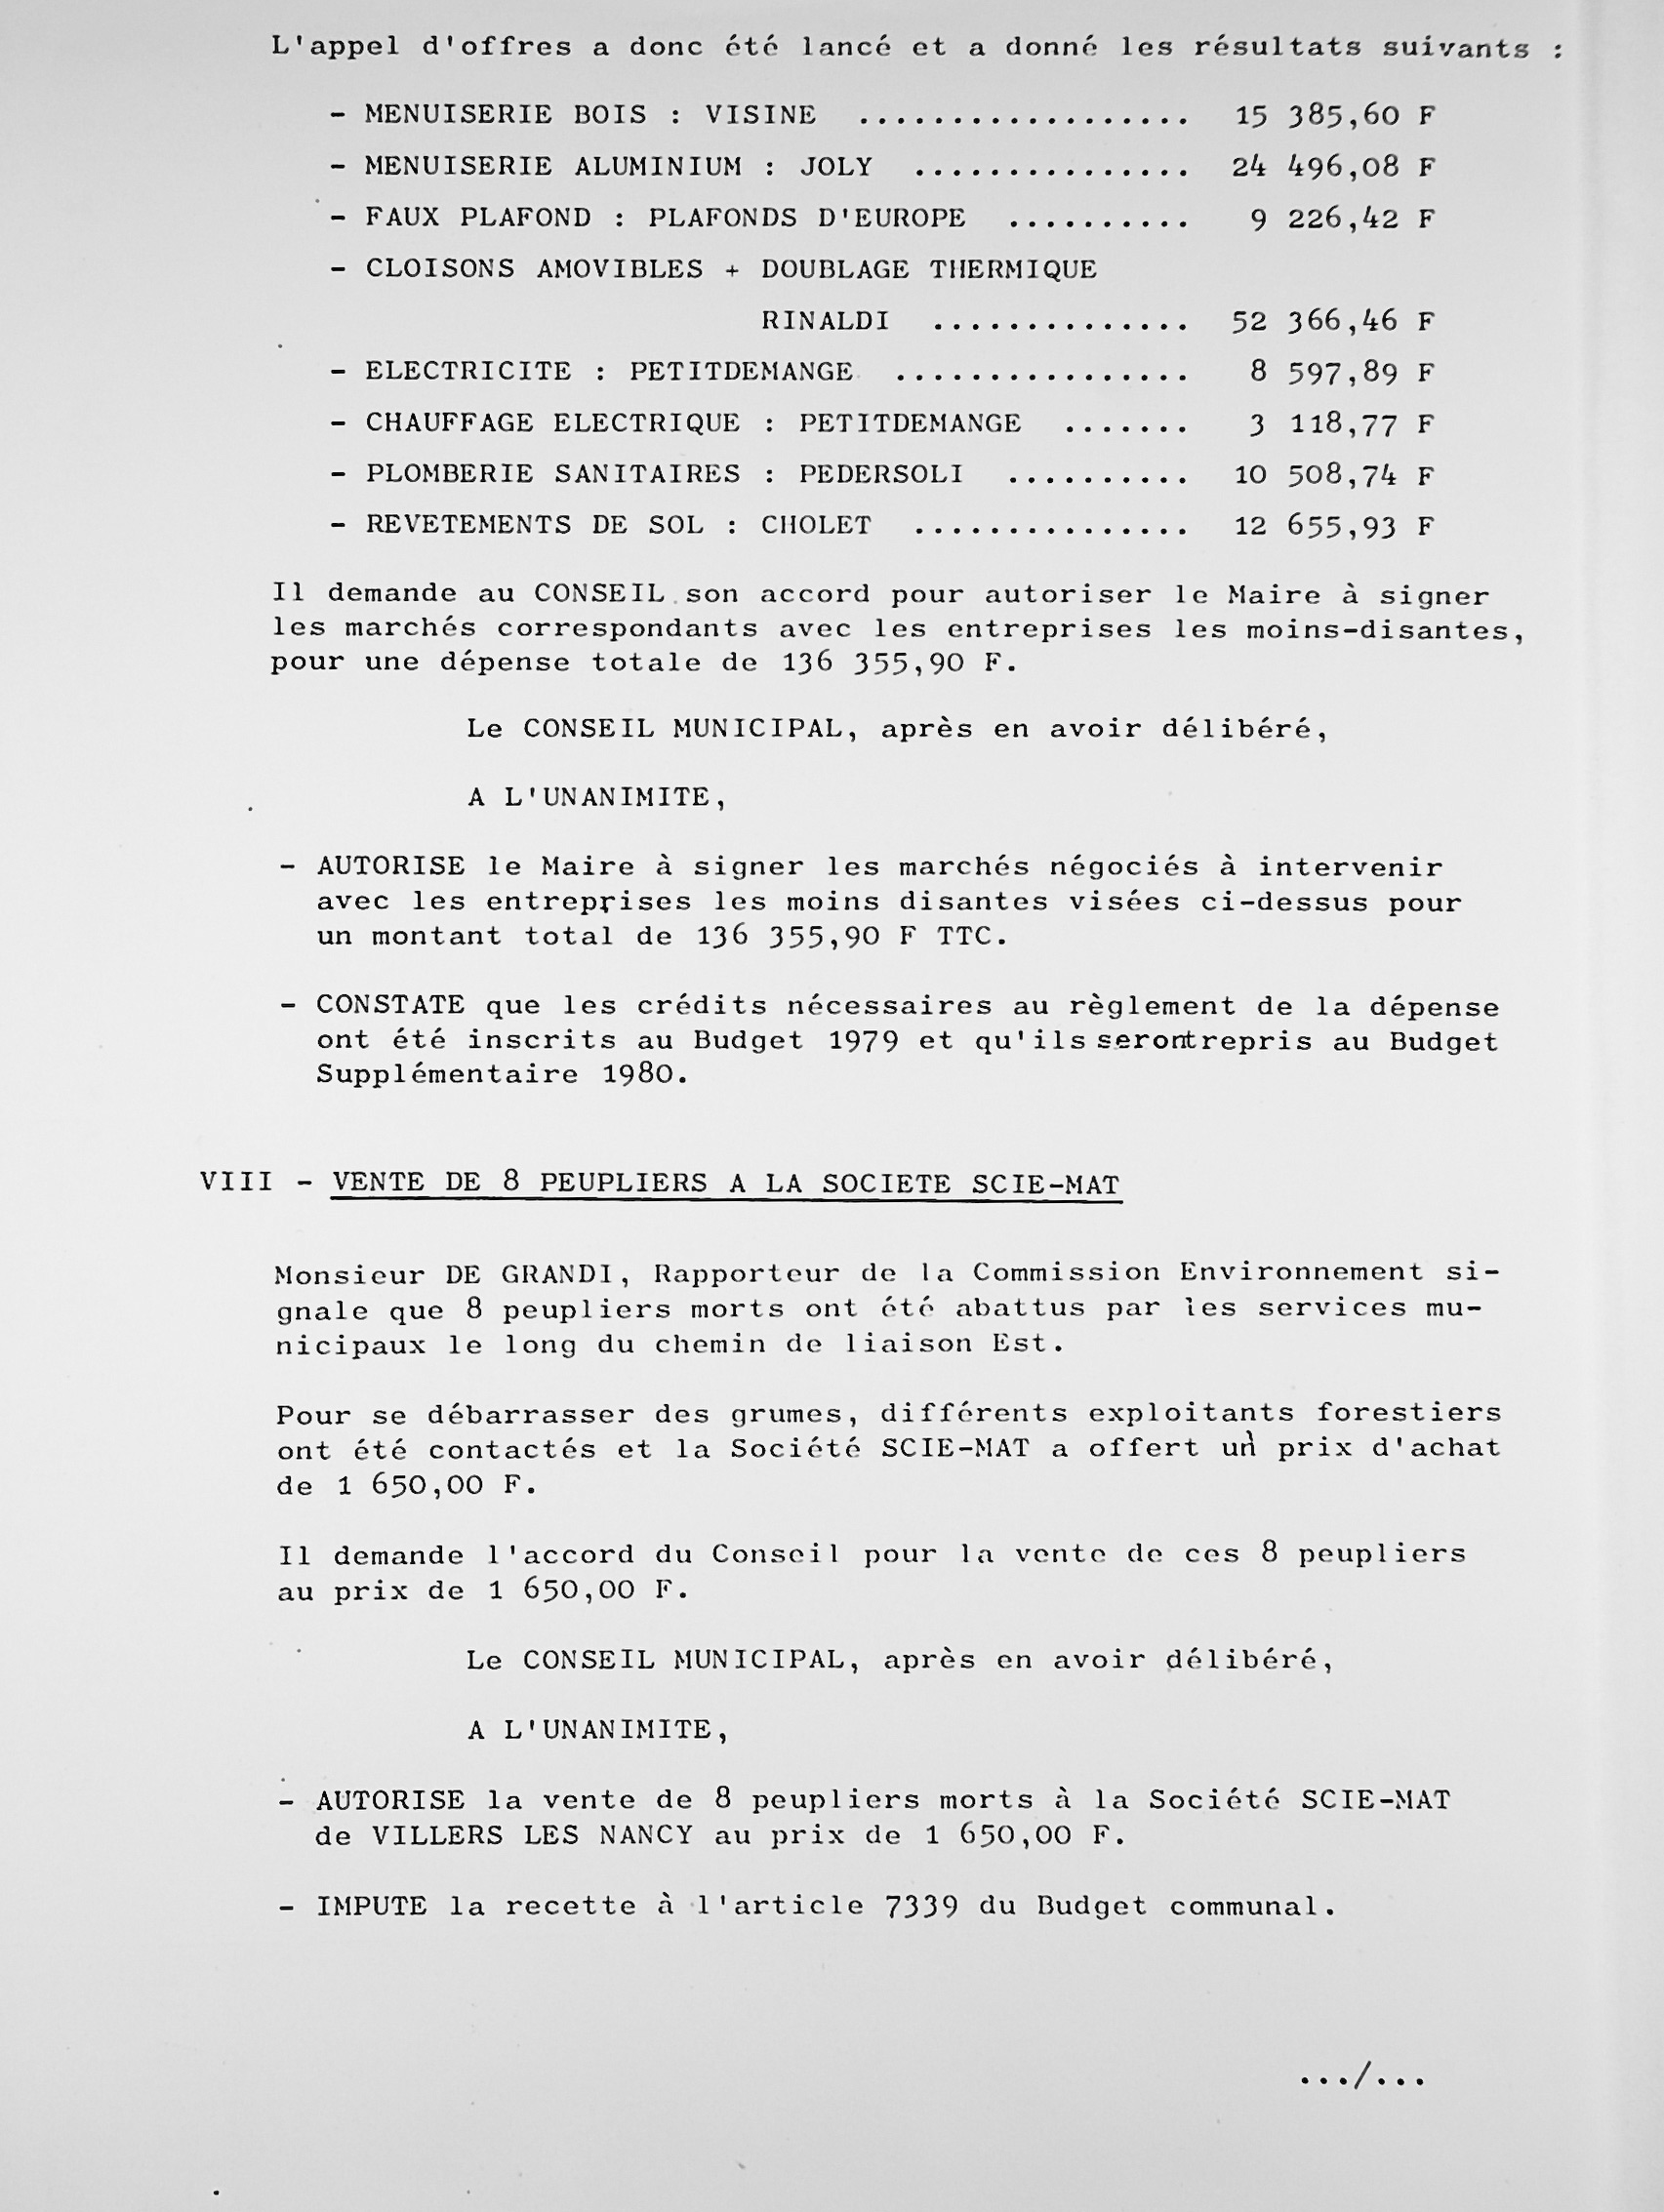 Feuillet_097B_1977-1980.jpg